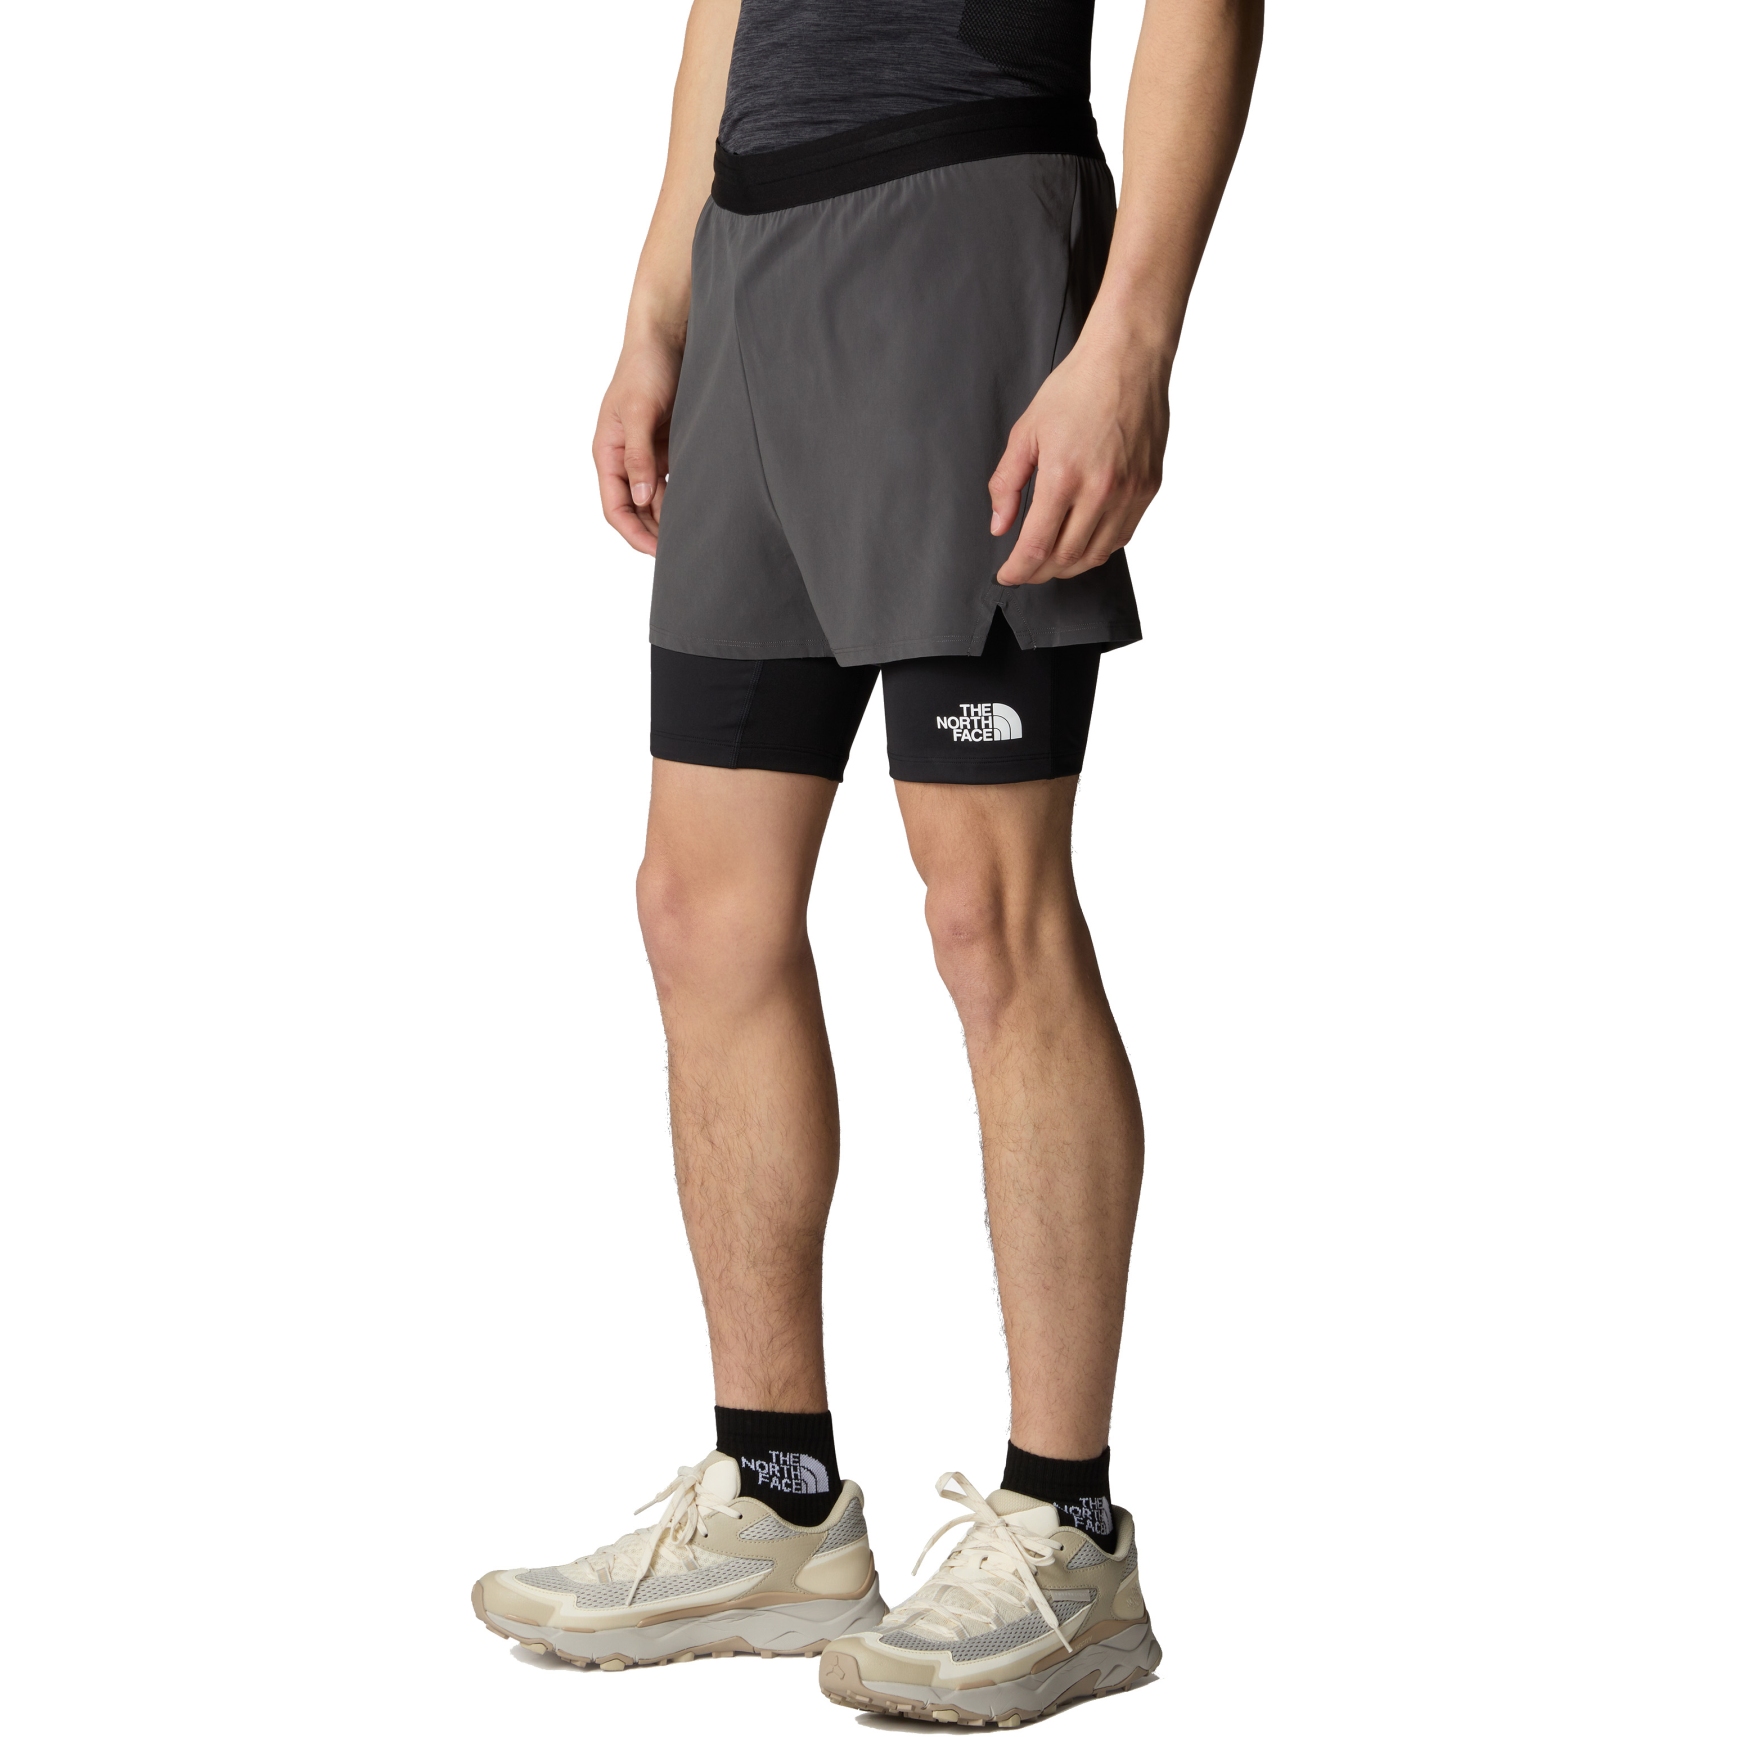 Produktbild von The North Face Mountain Athletics Lab Dual Shorts Herren - Anthracite Grey/TNF Black